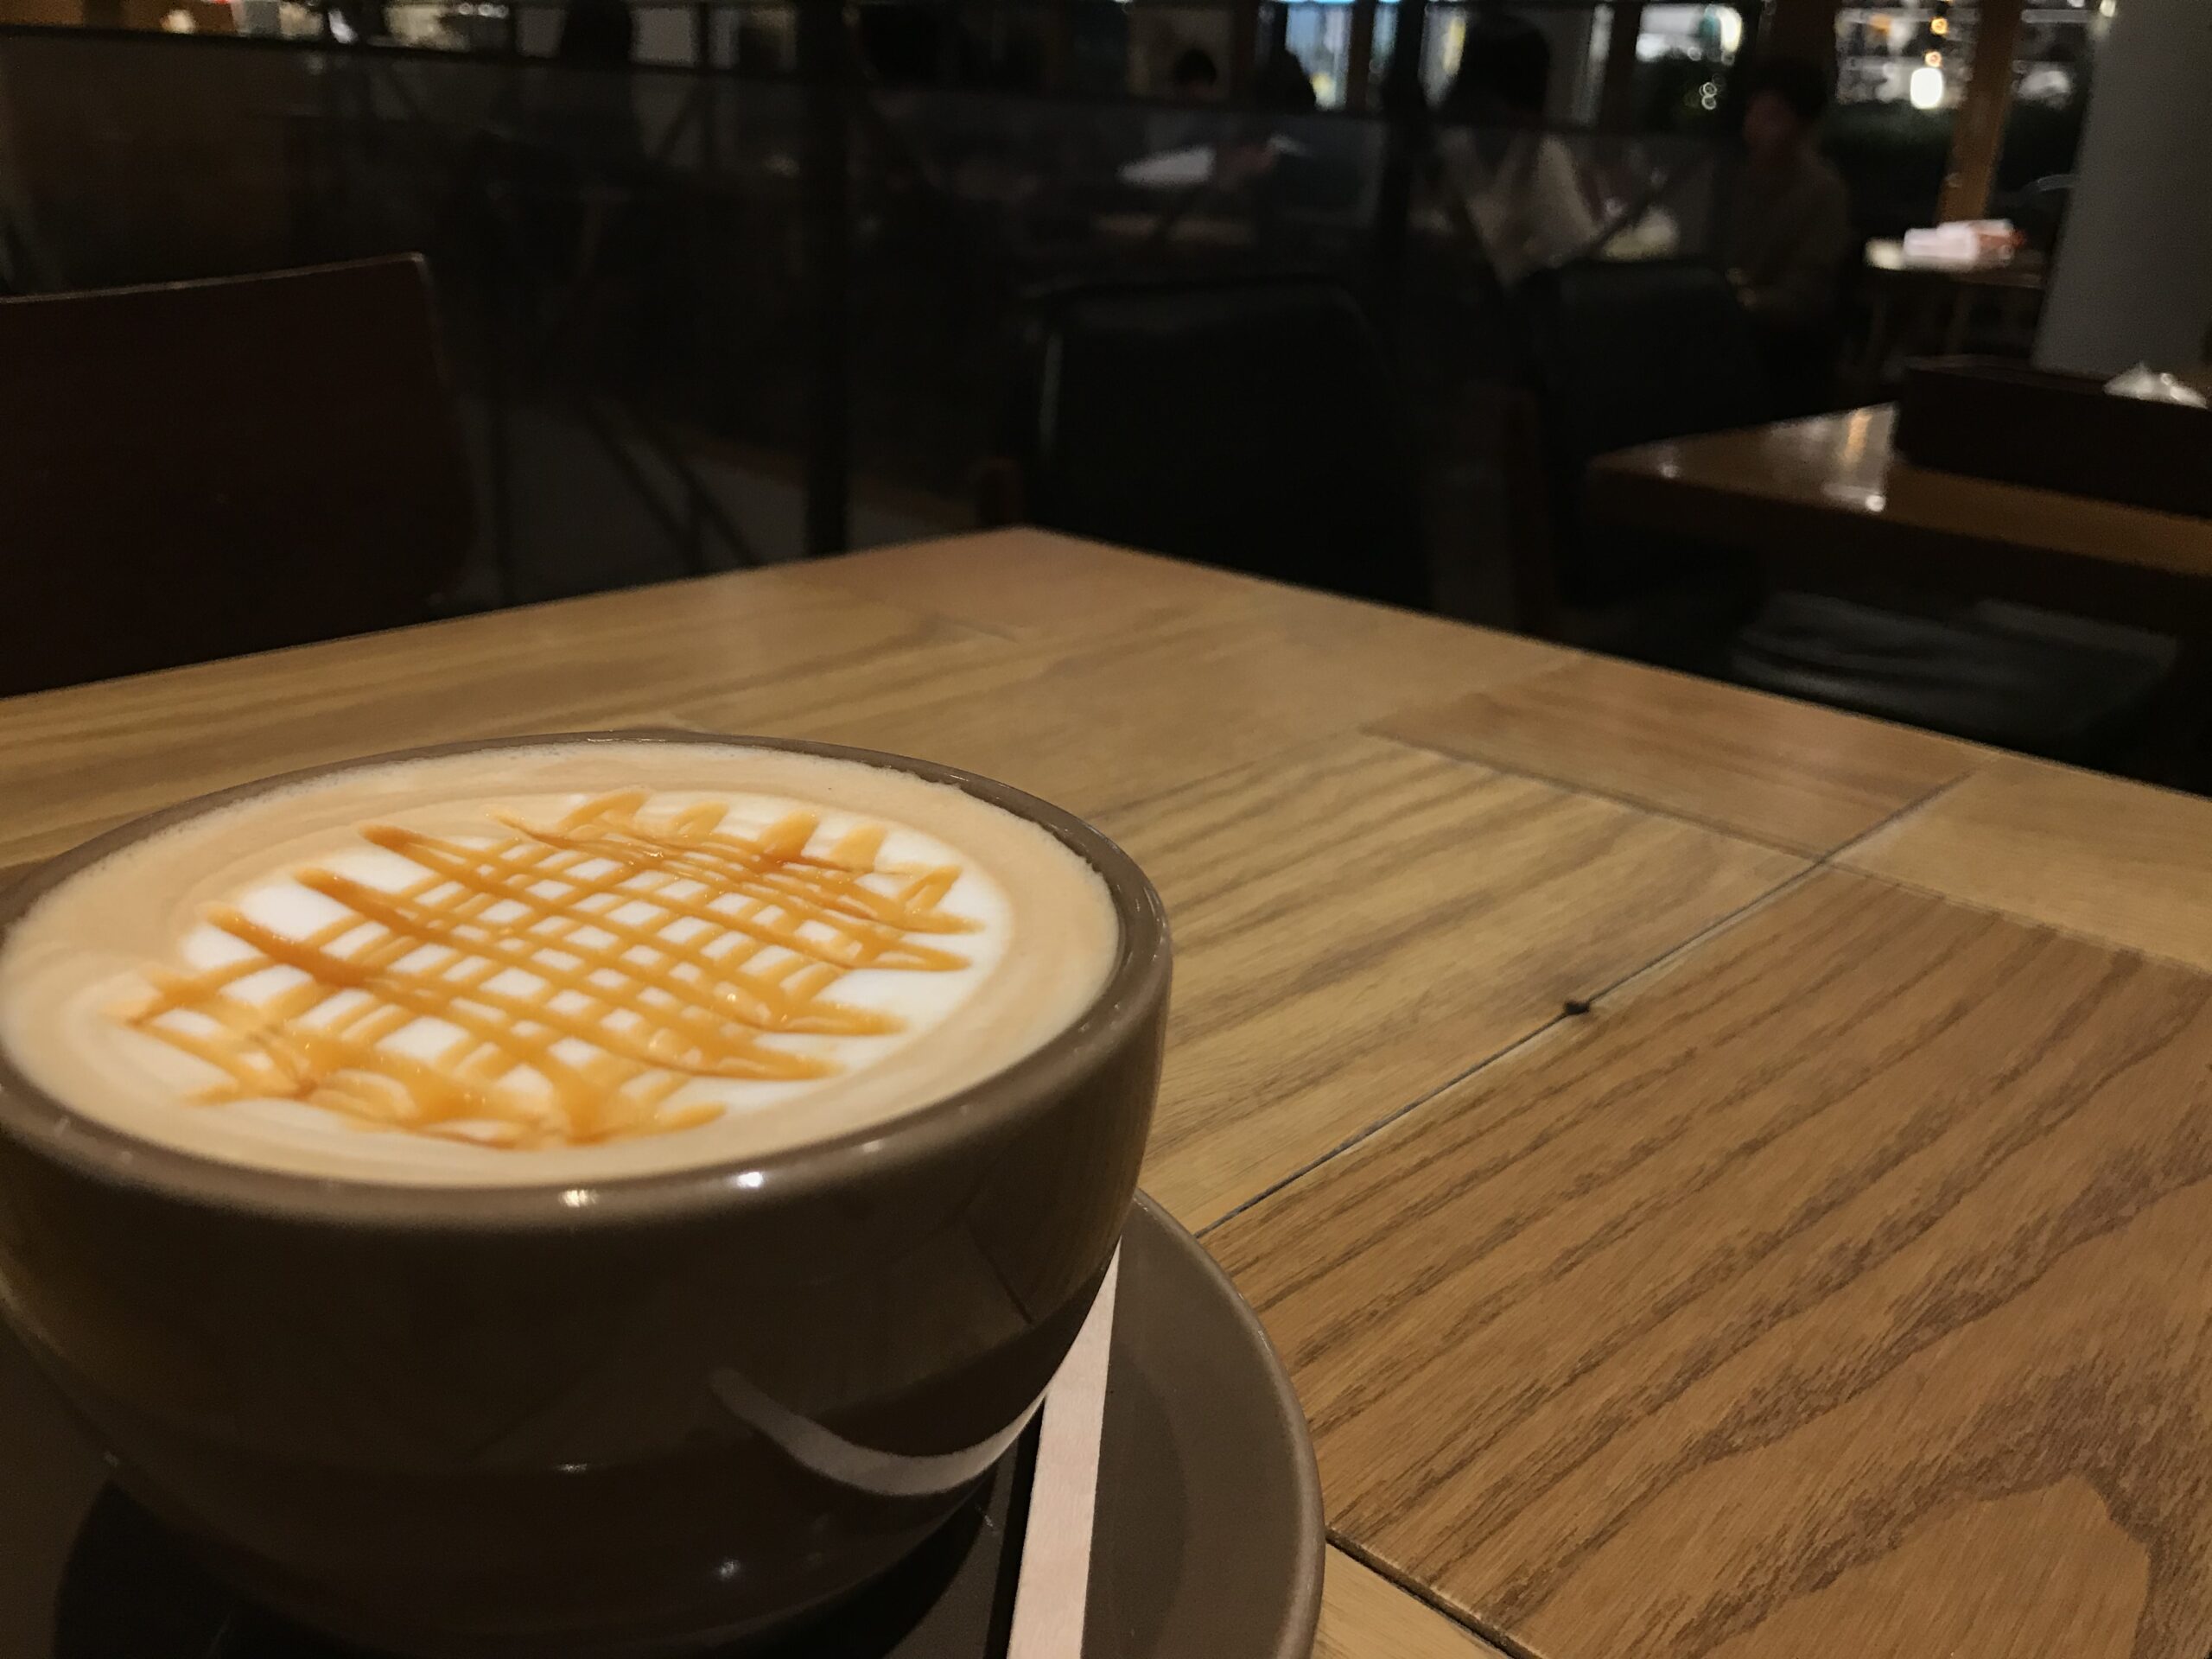 ブルートラベルエンジニア パソコン作業（プログラミング学習環境）におすすめのカフェ|渋谷 ジンナンカフェ